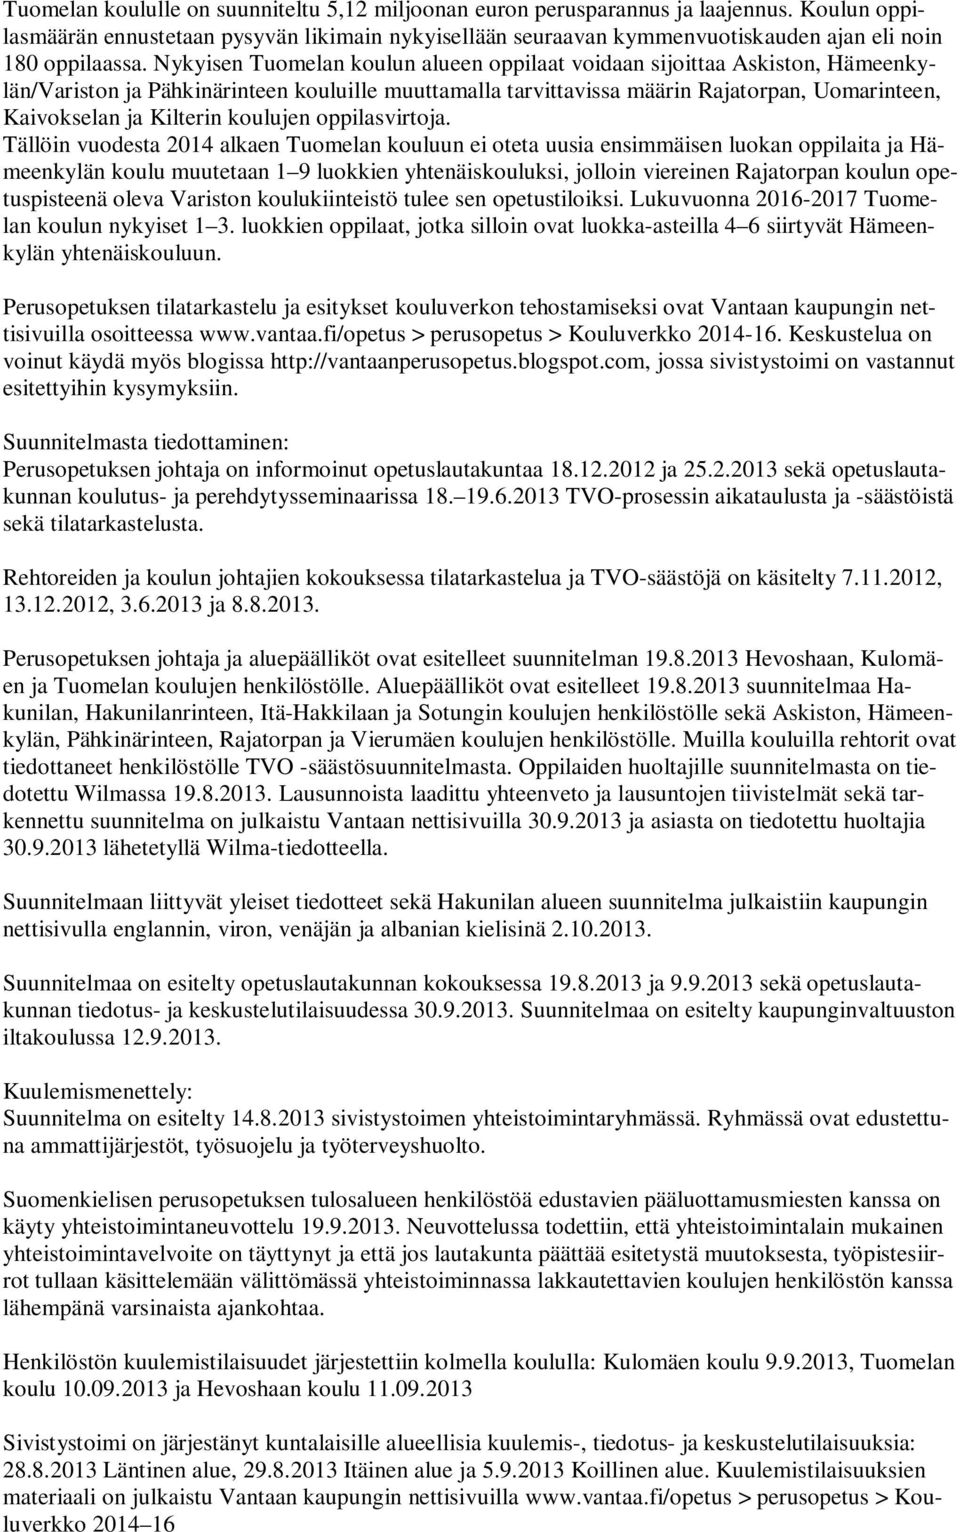 Nykyisen Tuomelan koulun alueen oppilaat voidaan sijoittaa Askiston, Hämeenkylän/Variston ja Pähkinärinteen kouluille muuttamalla tarvittavissa määrin Rajatorpan, Uomarinteen, Kaivokselan ja Kilterin